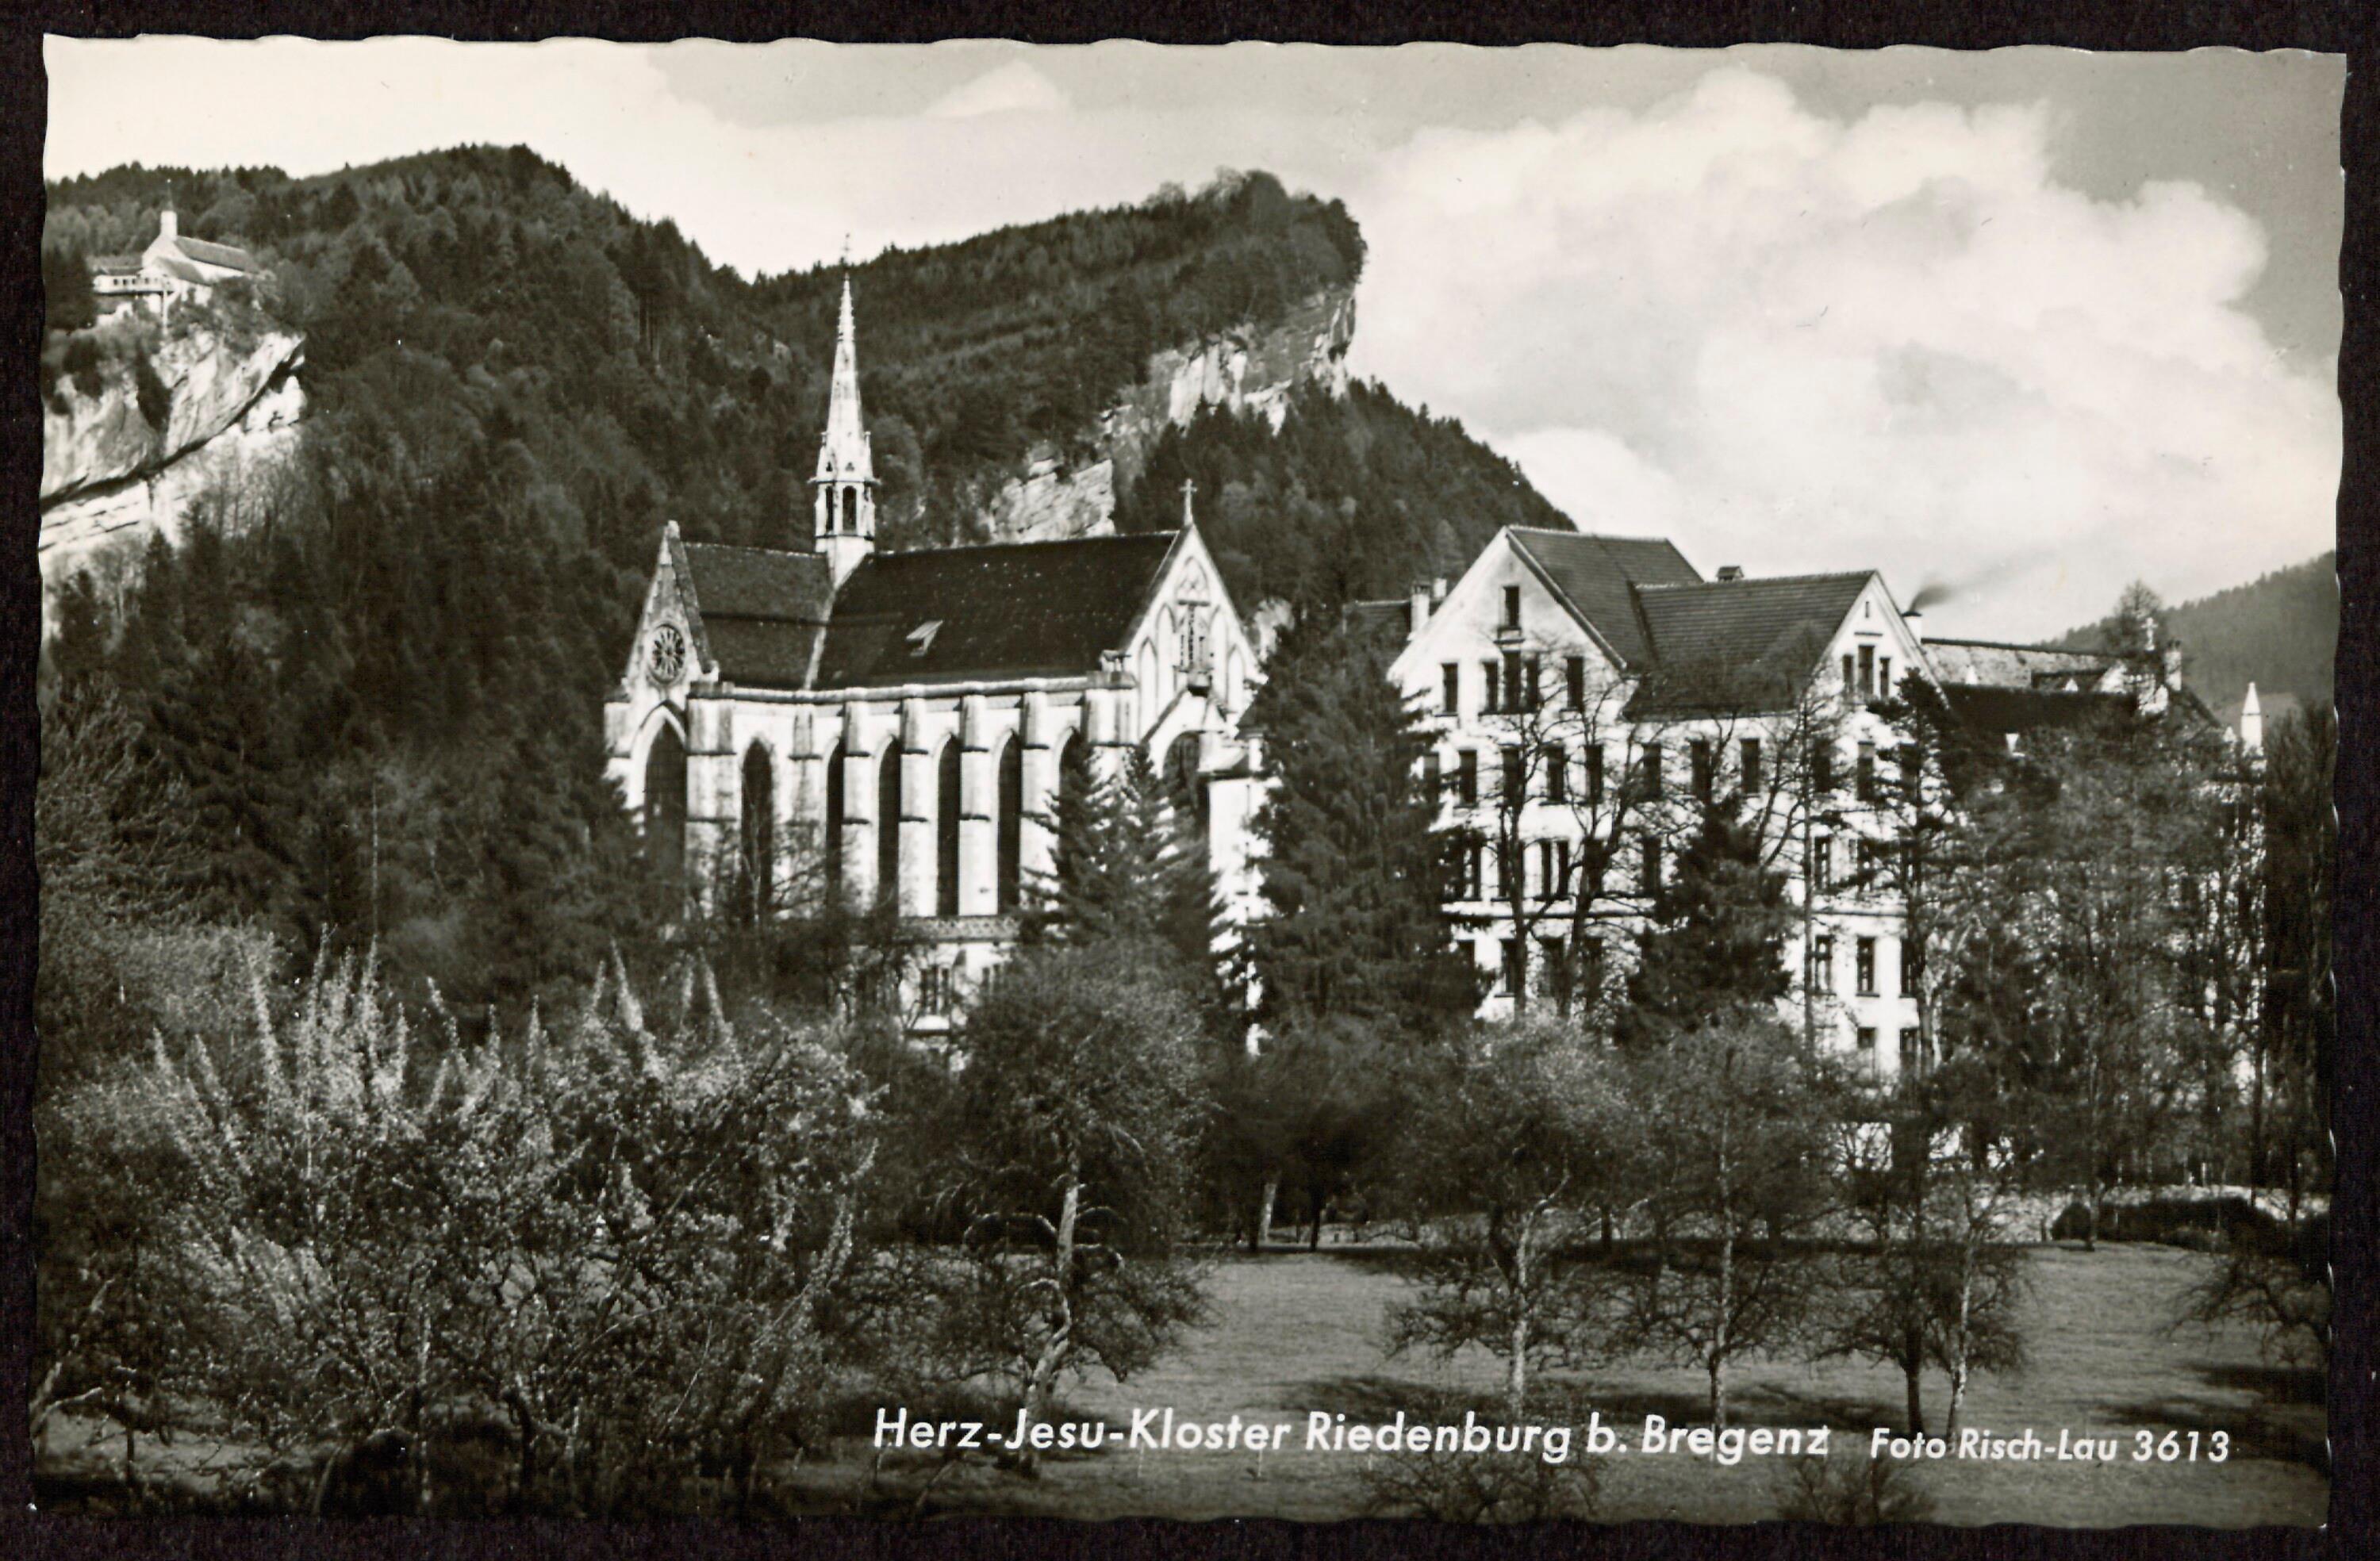 Herz-Jesu-Kloster Riedenburg b. Bregenz></div>


    <hr>
    <div class=